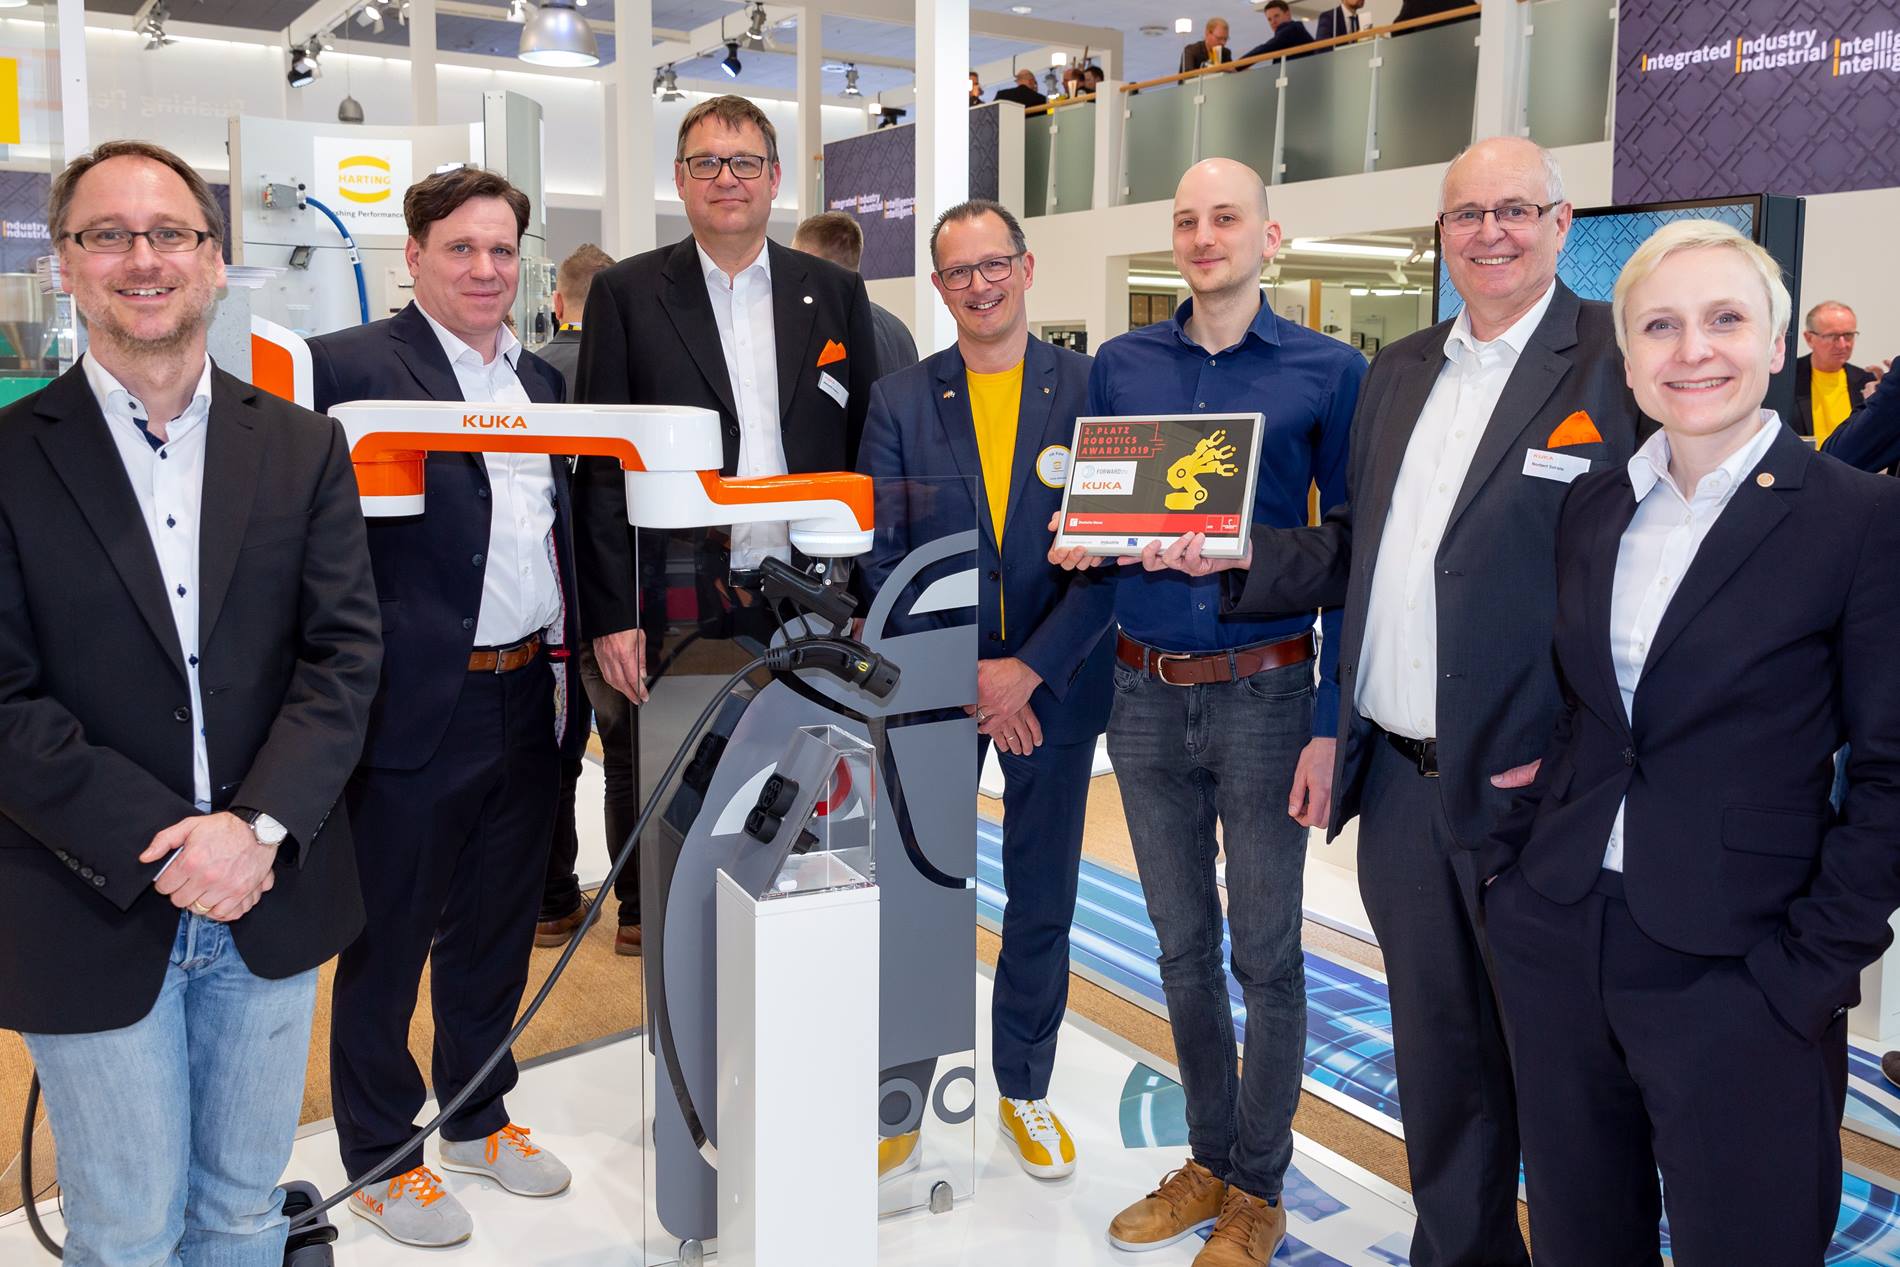 Das KUKA und FORWARDttc Team bei der Robotics Award Verleihung auf der Hannover Messe 2019